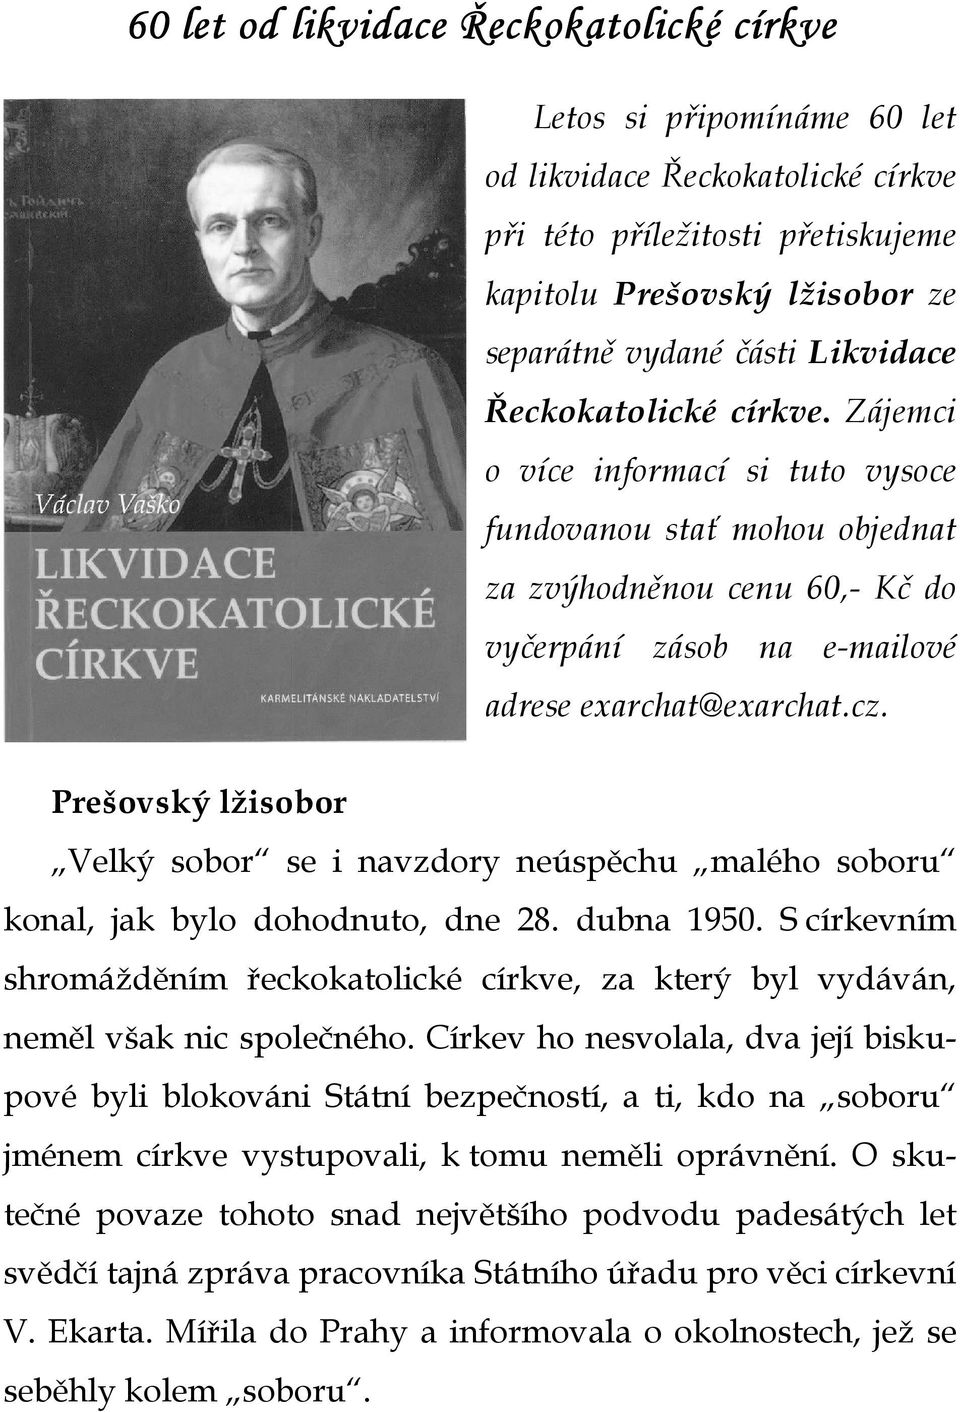 Prešovský lžisobor Velký sobor se i navzdory neúspěchu malého soboru konal, jak bylo dohodnuto, dne 28. dubna 1950.